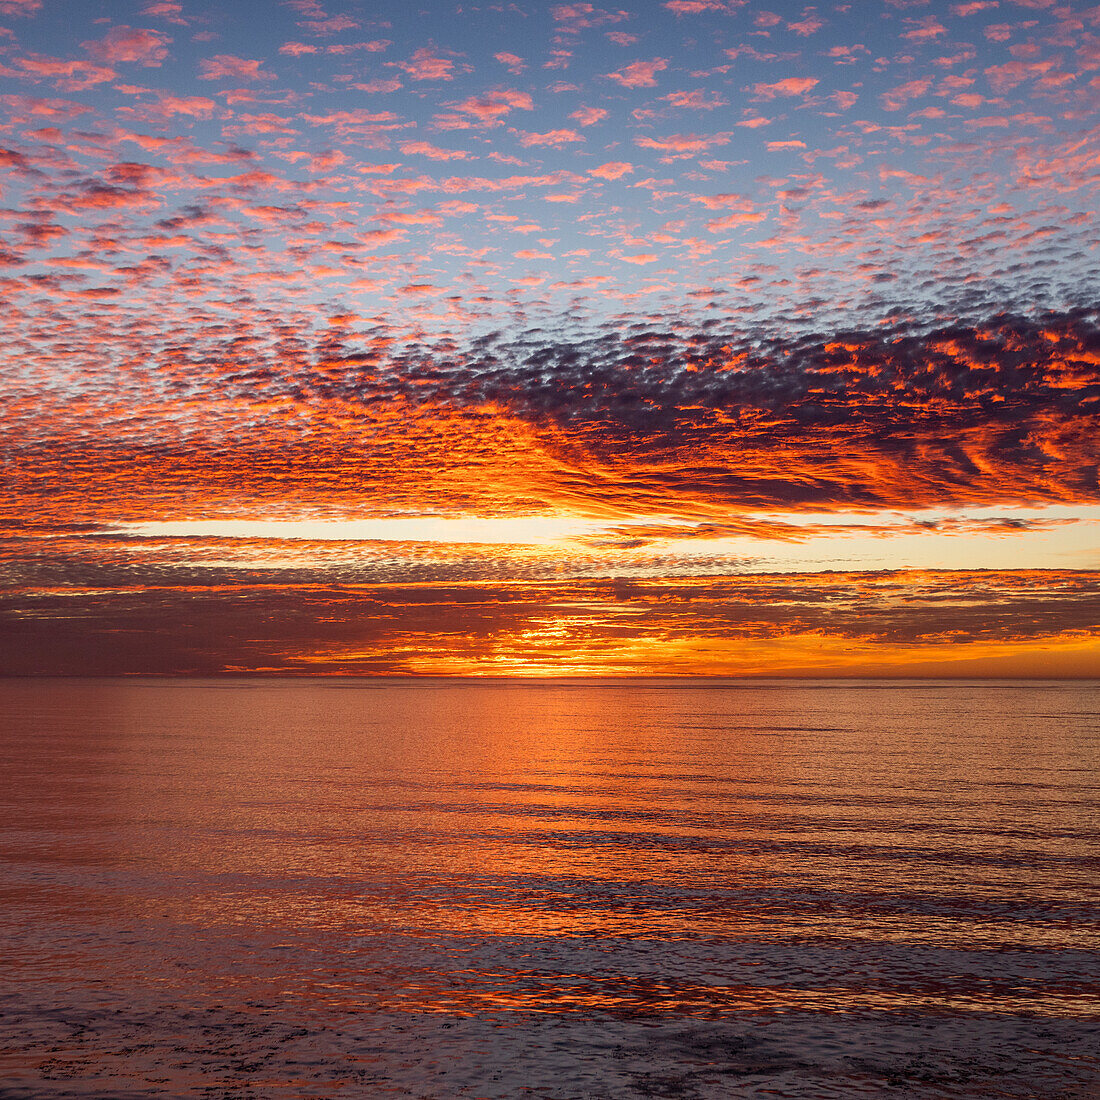 Vereinigte Staaten, Kalifornien, Big Sur, Cirruswolken über dem Meer bei Sonnenuntergang